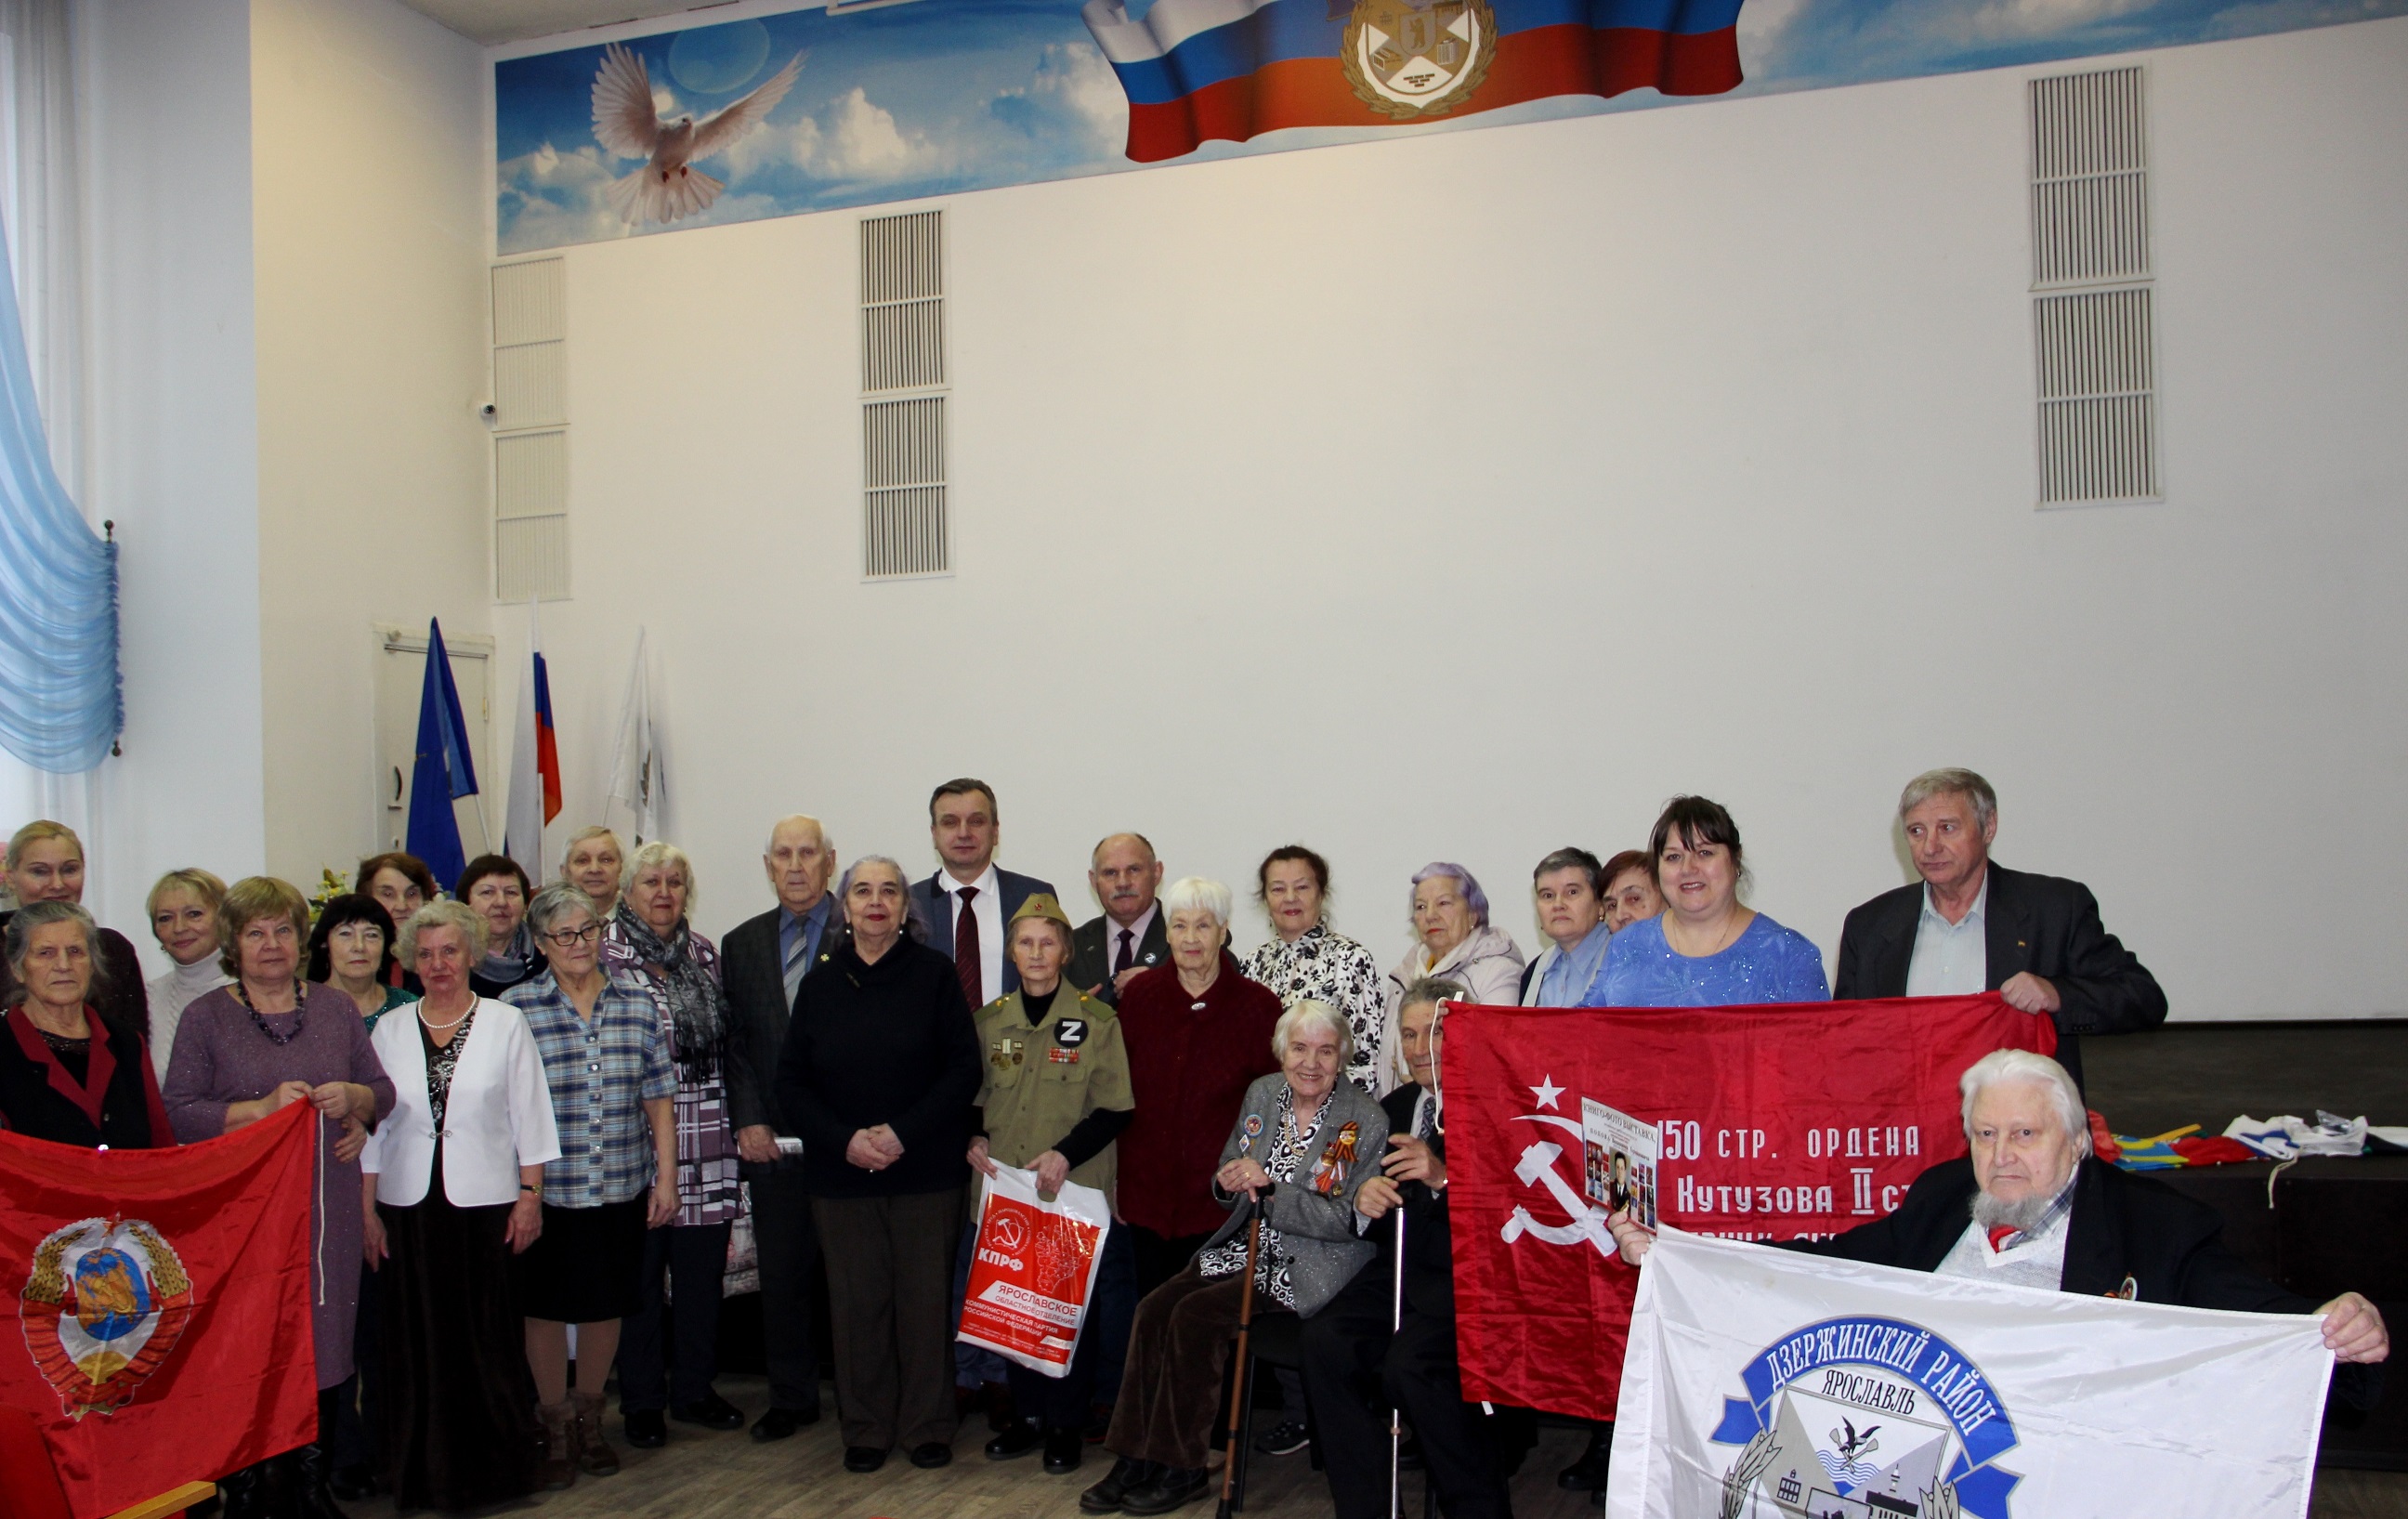 Ветеранов Дзержинского района Ярославля поздравили со 100-летием образования СССР